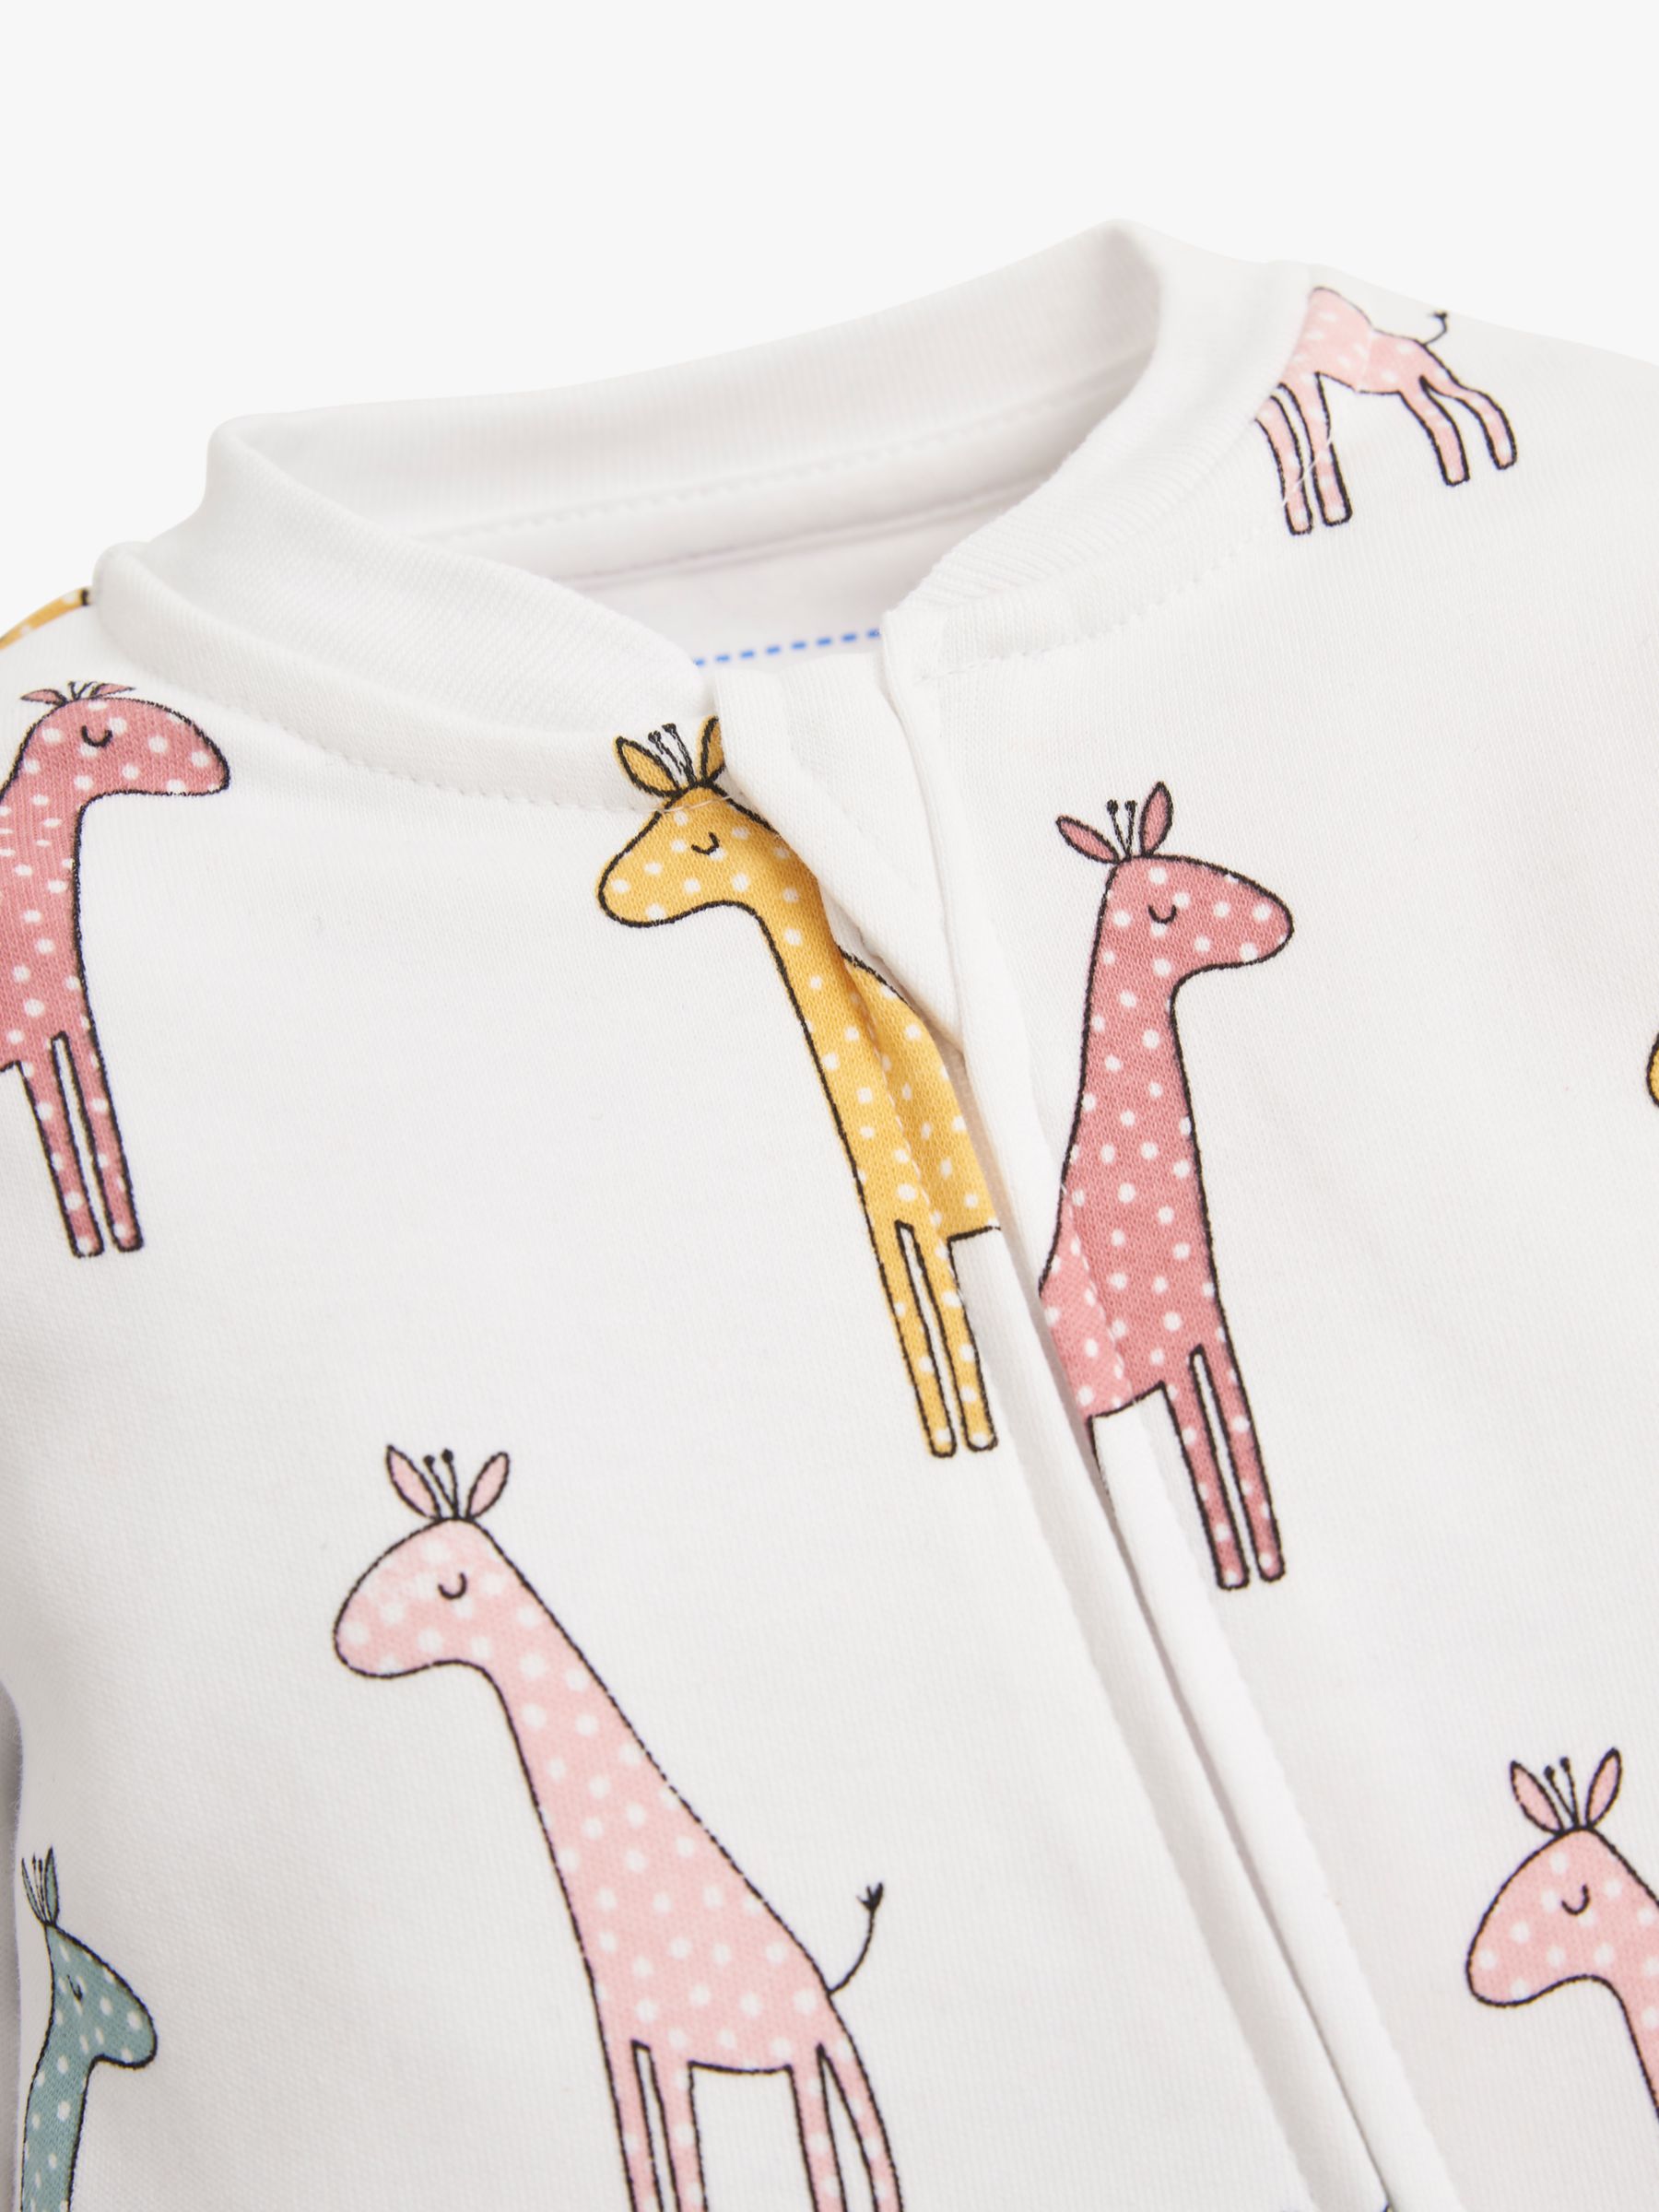 JoJo Maman Bébé Giraffe Print Zip Sleepsuit, White, 6-9 months